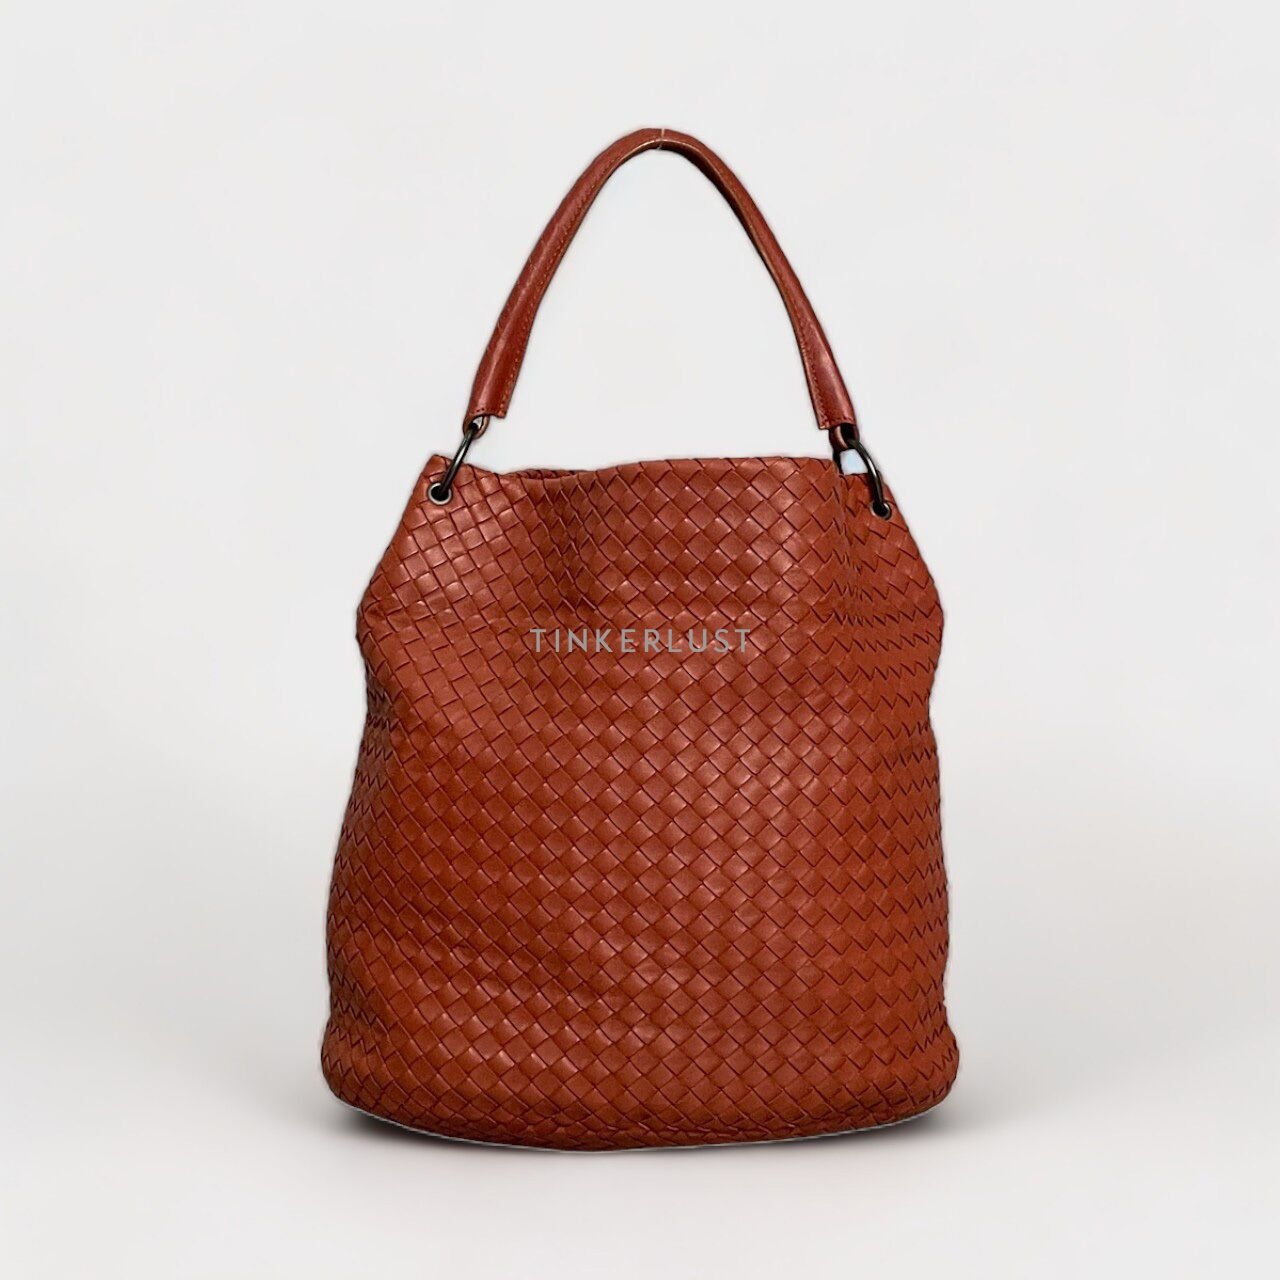 Bottega Veneta Brown & Red Tote Bag